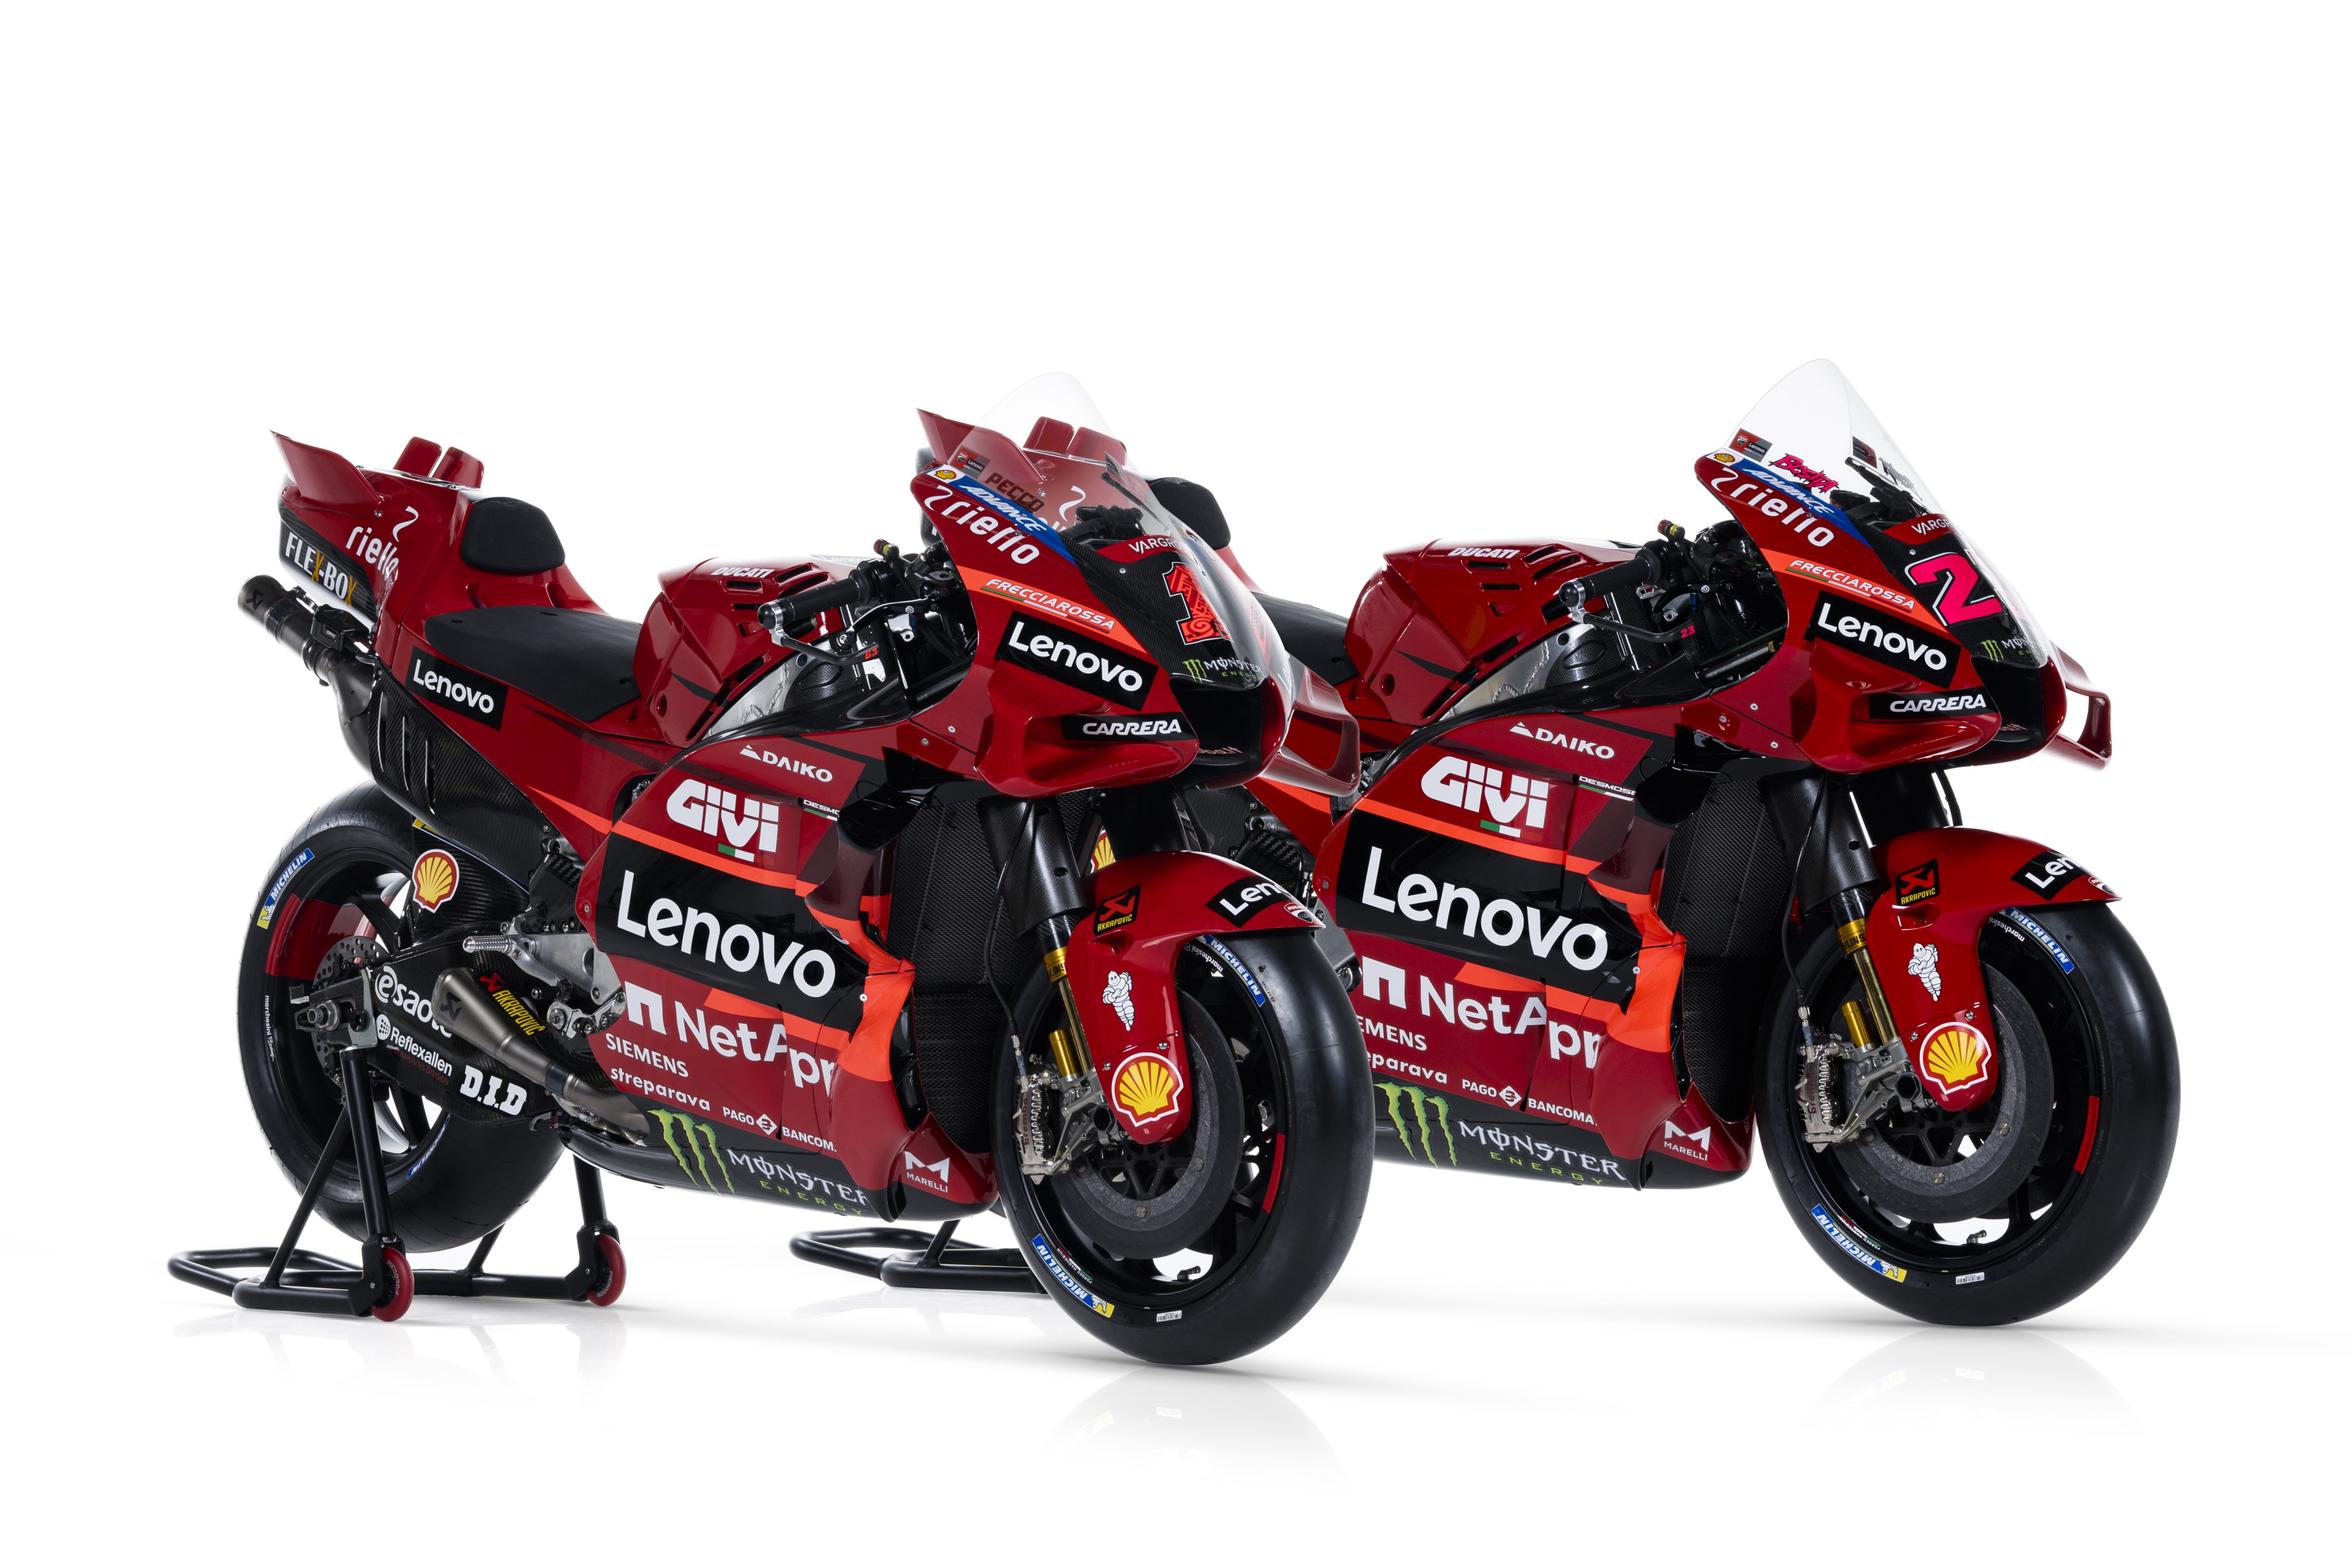 Ducati MotoGP livery